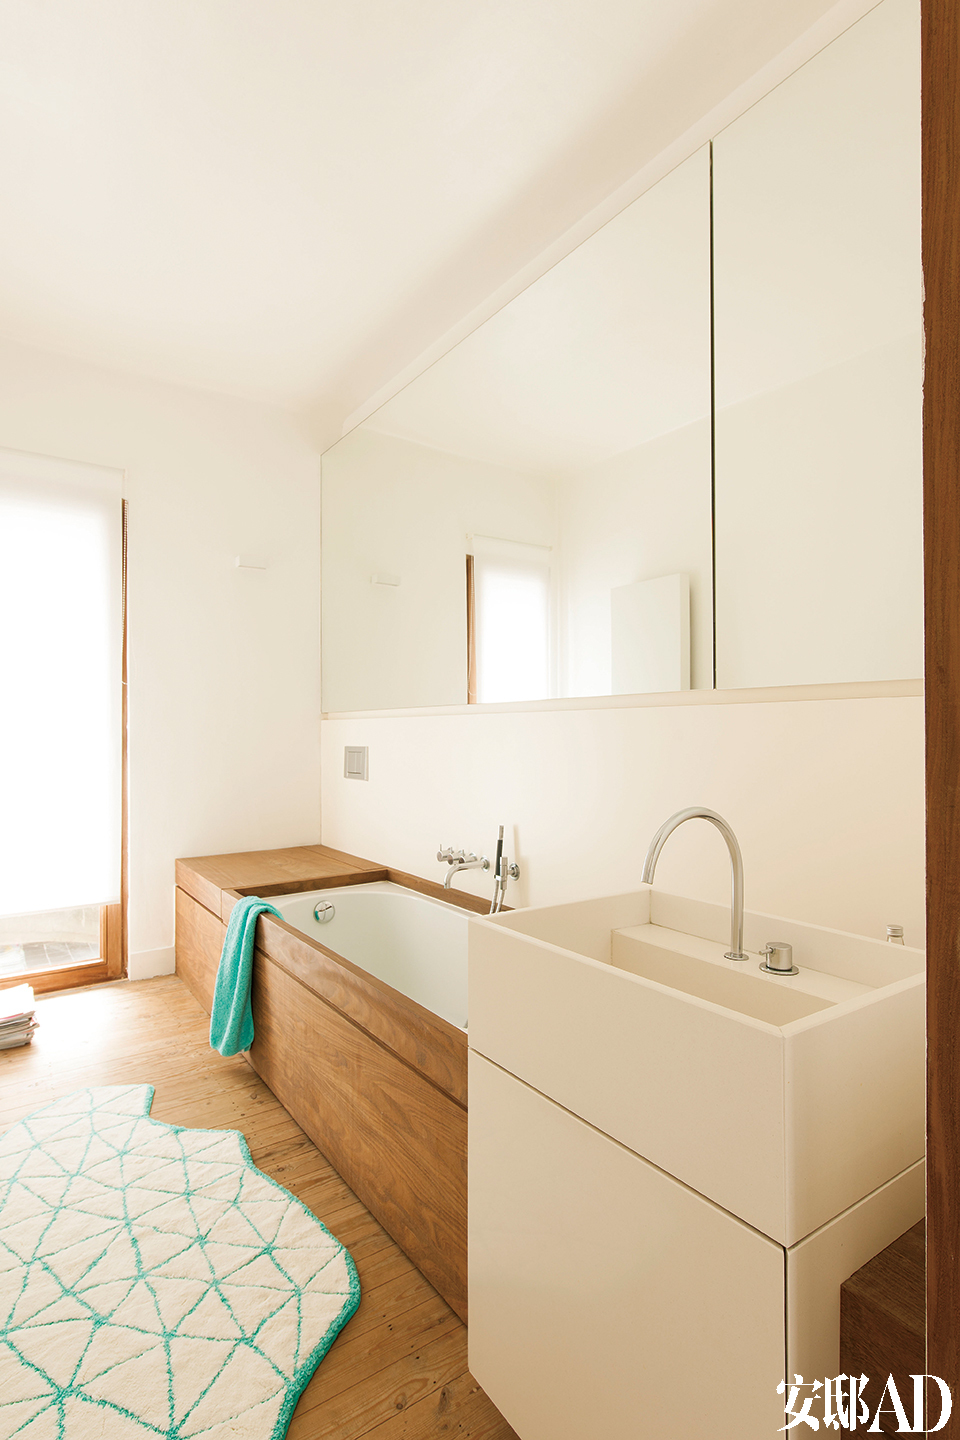 白色木质主题一直延伸至卧室。浴池选用了一种耐用的非洲木料Afromosia，洗脸池石料来自韩国。